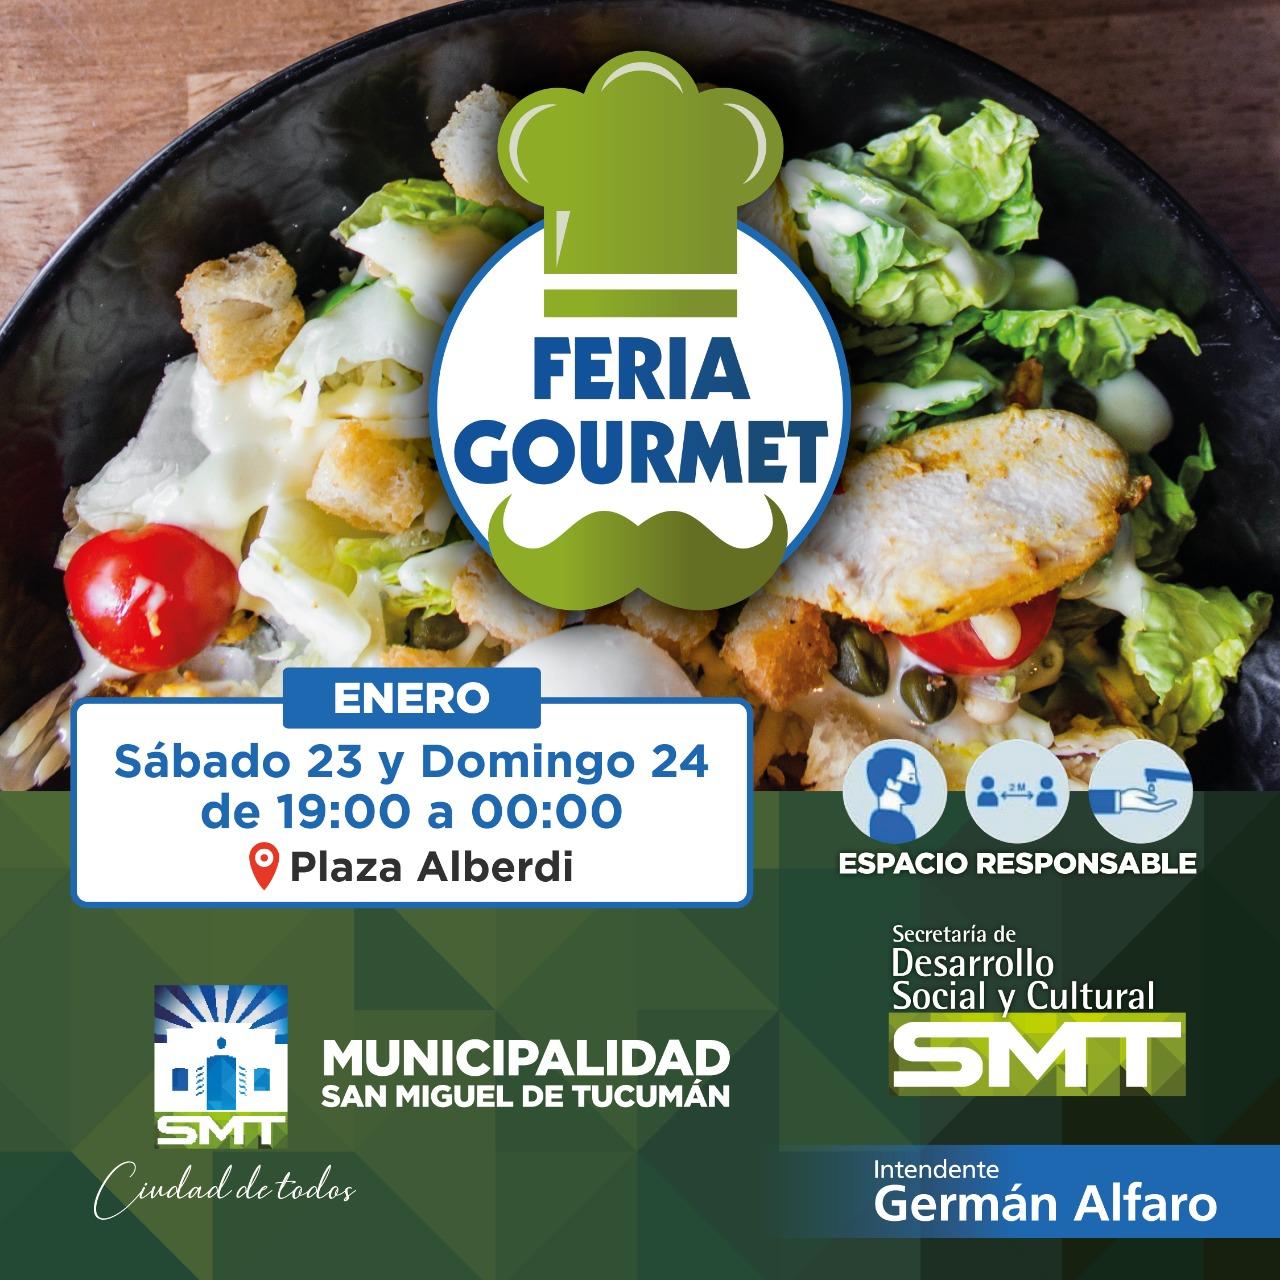 Sabores en la plaza Alberdi el fin de semana habrá una Feria Gourmet